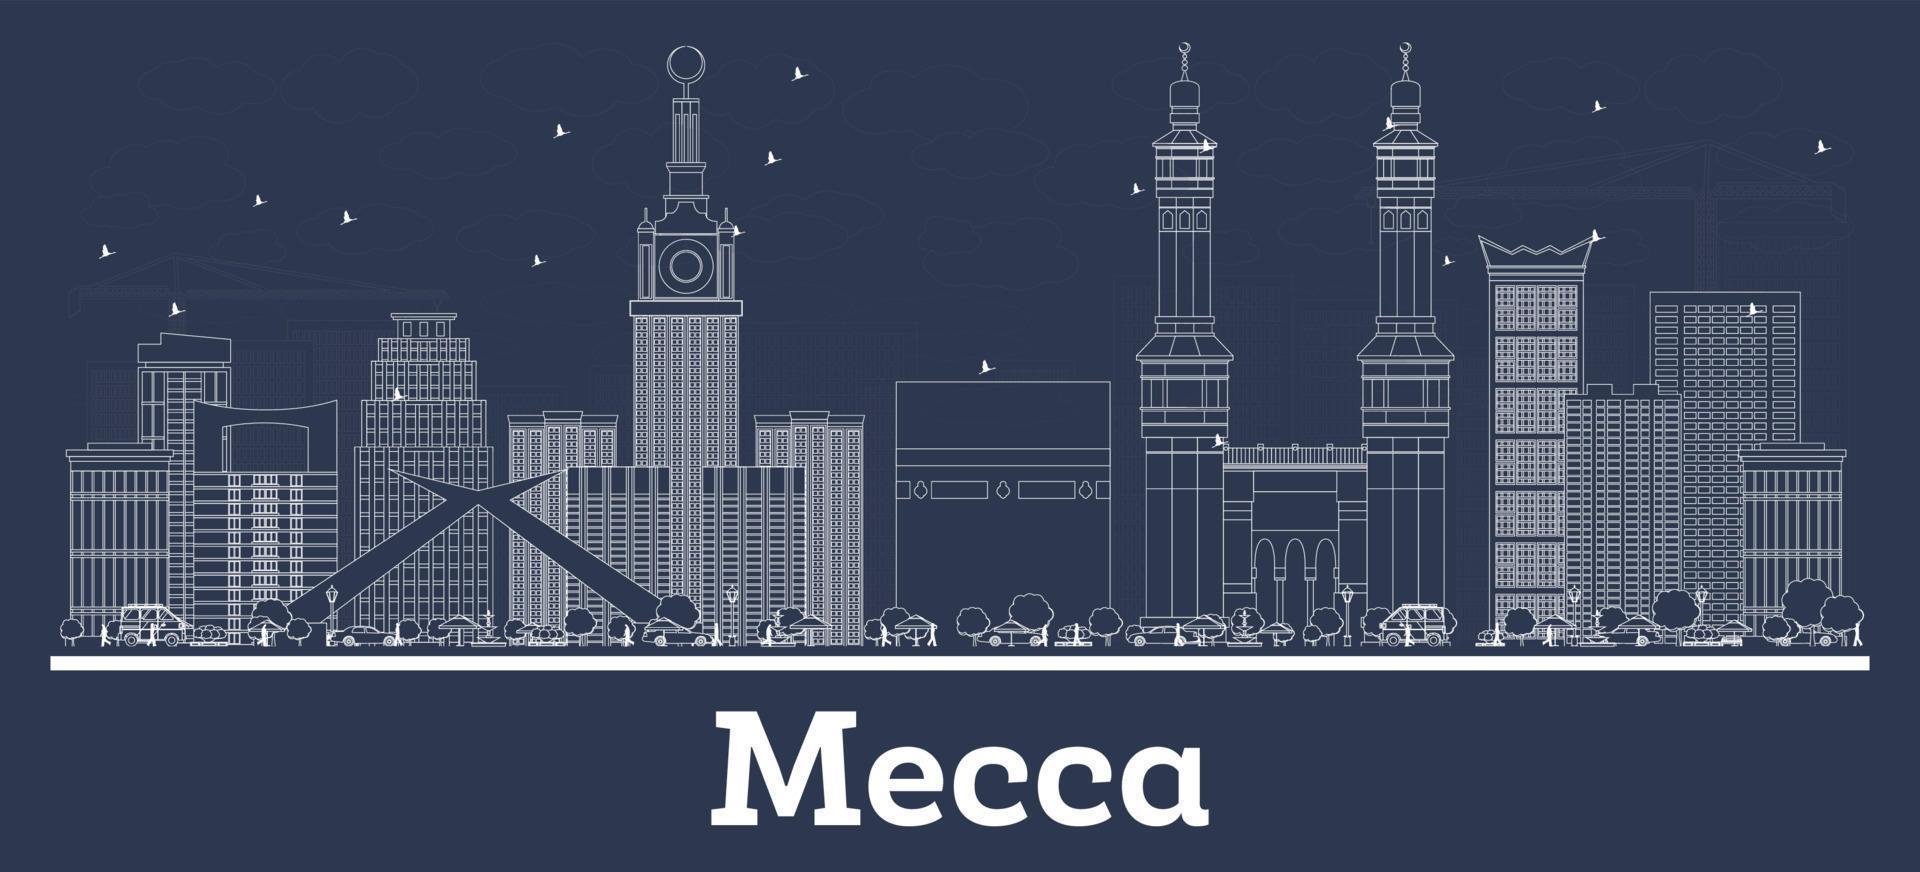 delinear el horizonte de la ciudad de arabia saudita meca con edificios blancos. vector